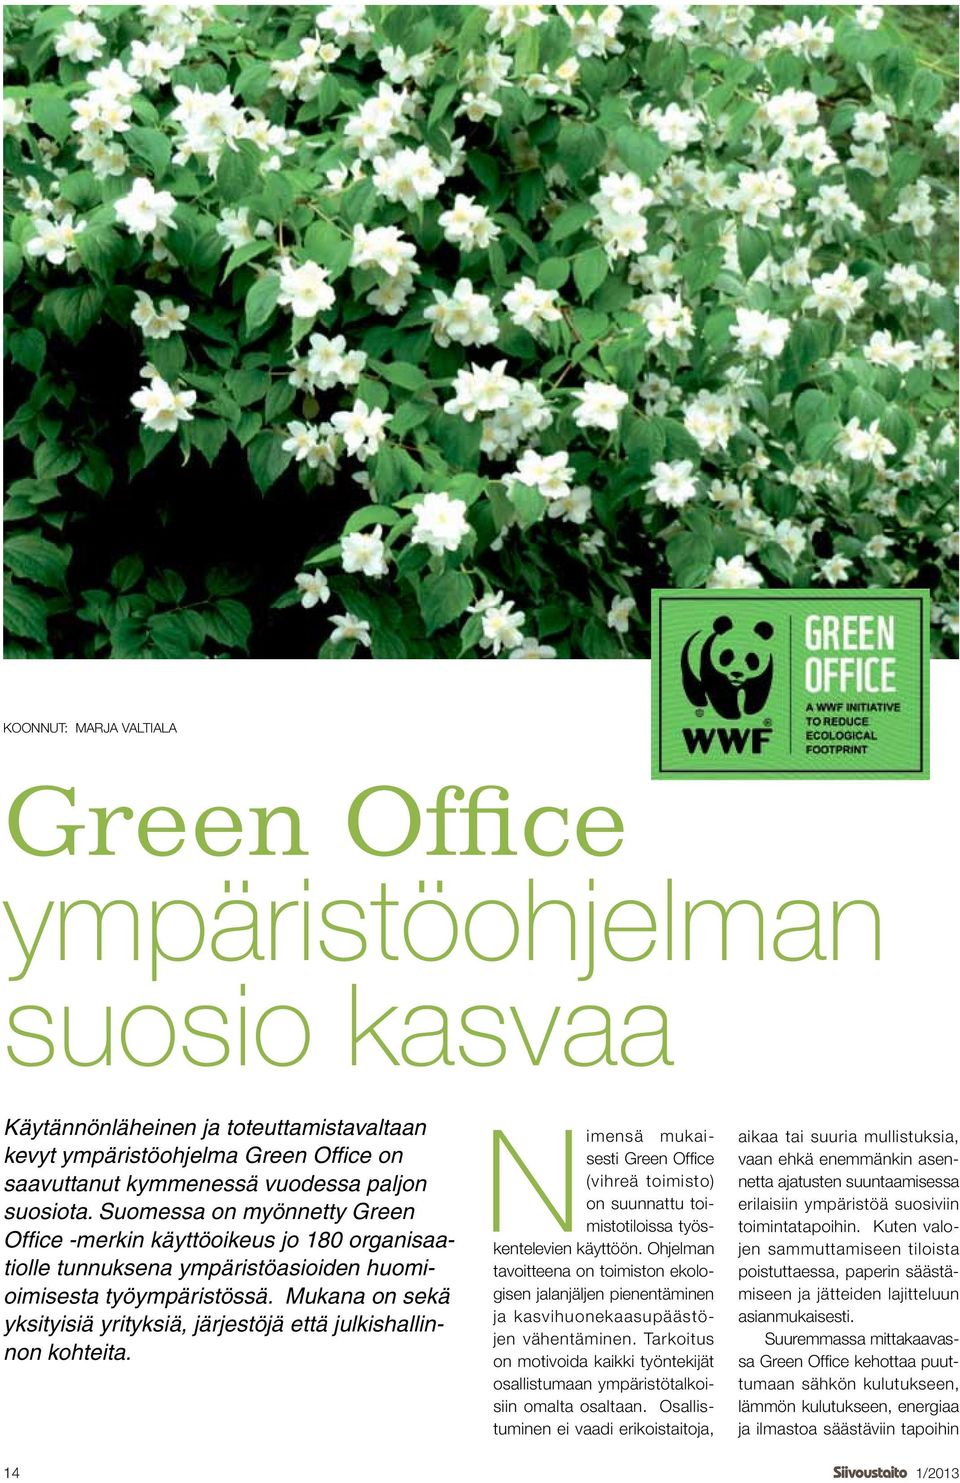 Mukana on sekä yksityisiä yrityksiä, järjestöjä että julkishallinnon kohteita. Nimensä mukaisesti Green Office (vihreä toimisto) on suunnattu toimistotiloissa työskentelevien käyttöön.